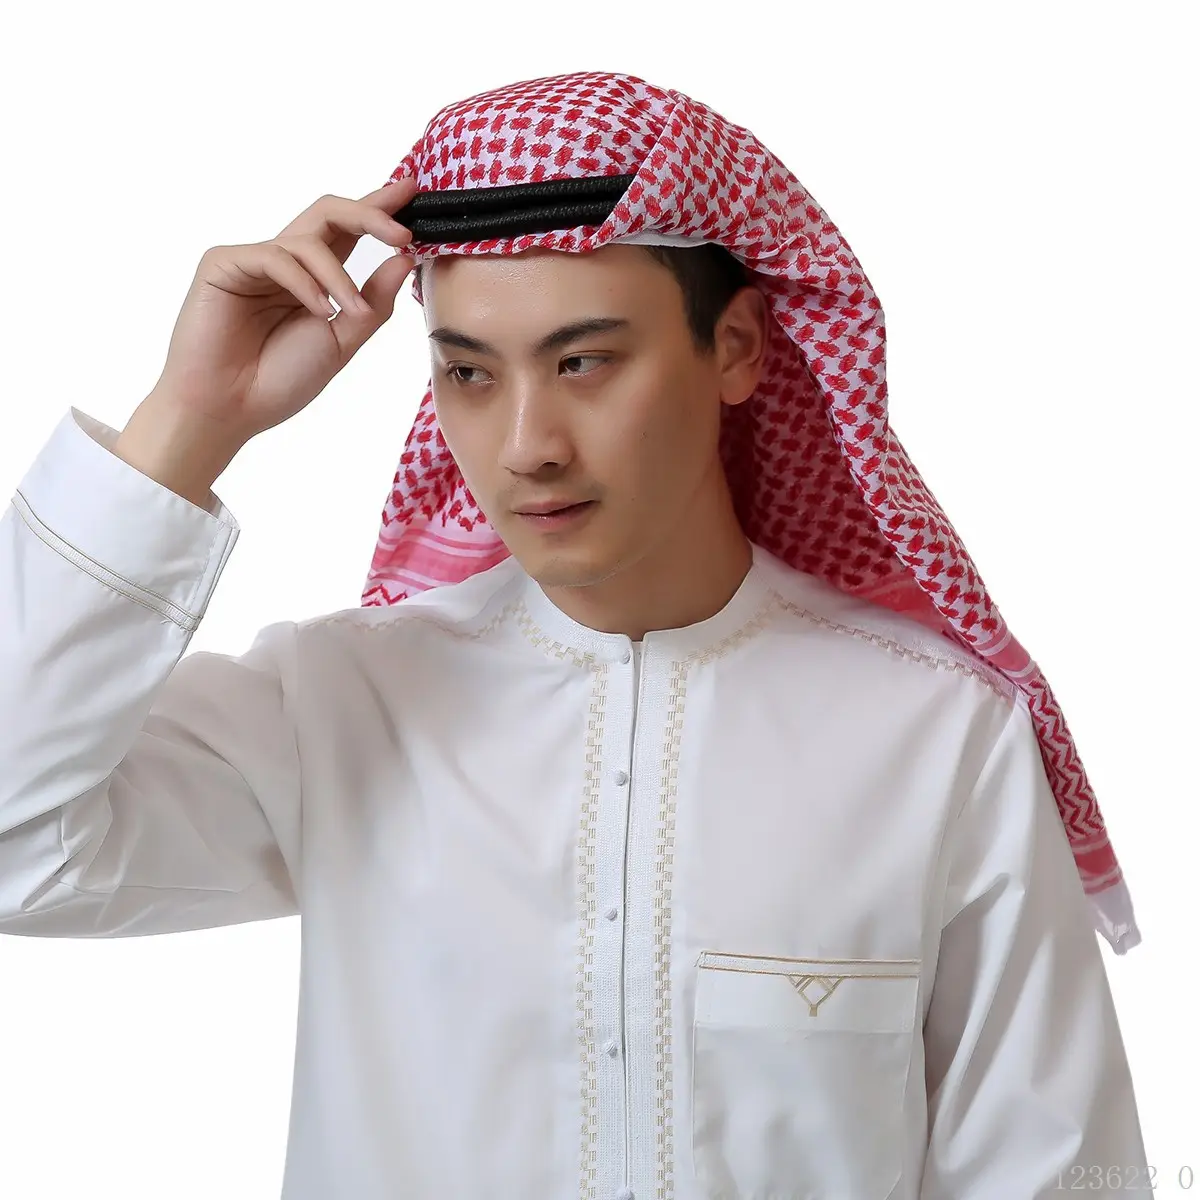 อี้อูผ้าพันคอสวมศีรษะสำหรับผู้ชาย,ฮิญาบหมวกผ้าโพกหัวมุสลิมสำหรับผู้ใหญ่ปี SC-191